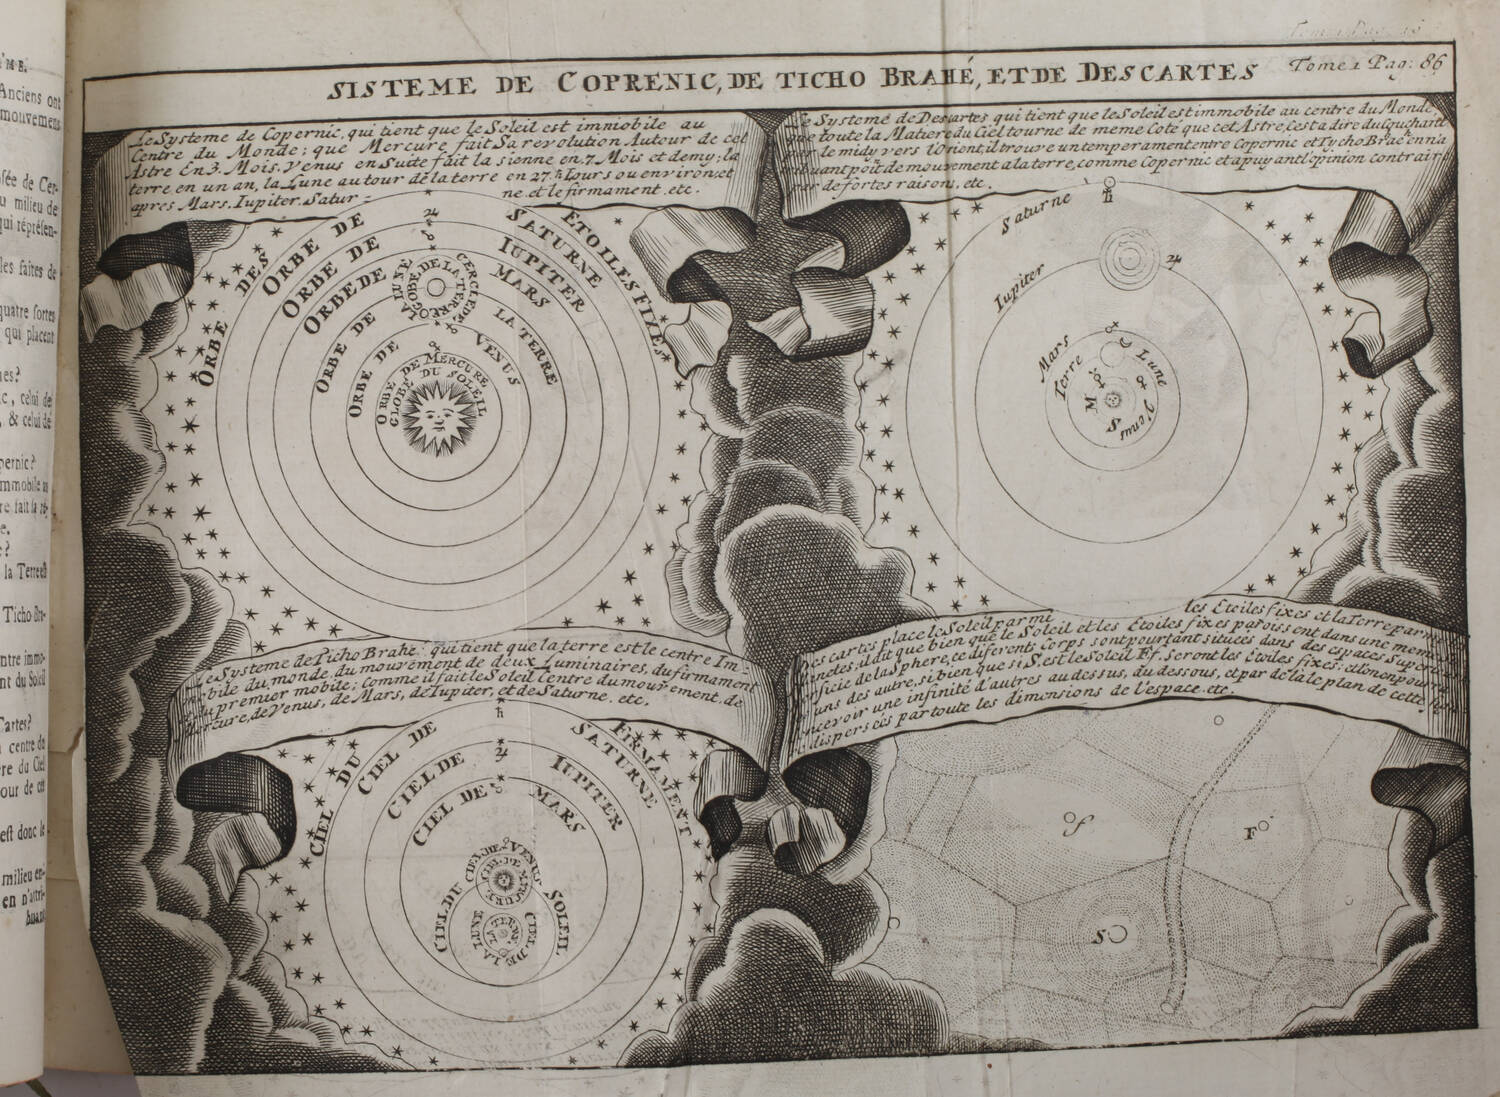 La science des personnes de la cour, d épée et de robe 1729 - 4 vol - planches - Photo 4, livre ancien du XVIIIe siècle